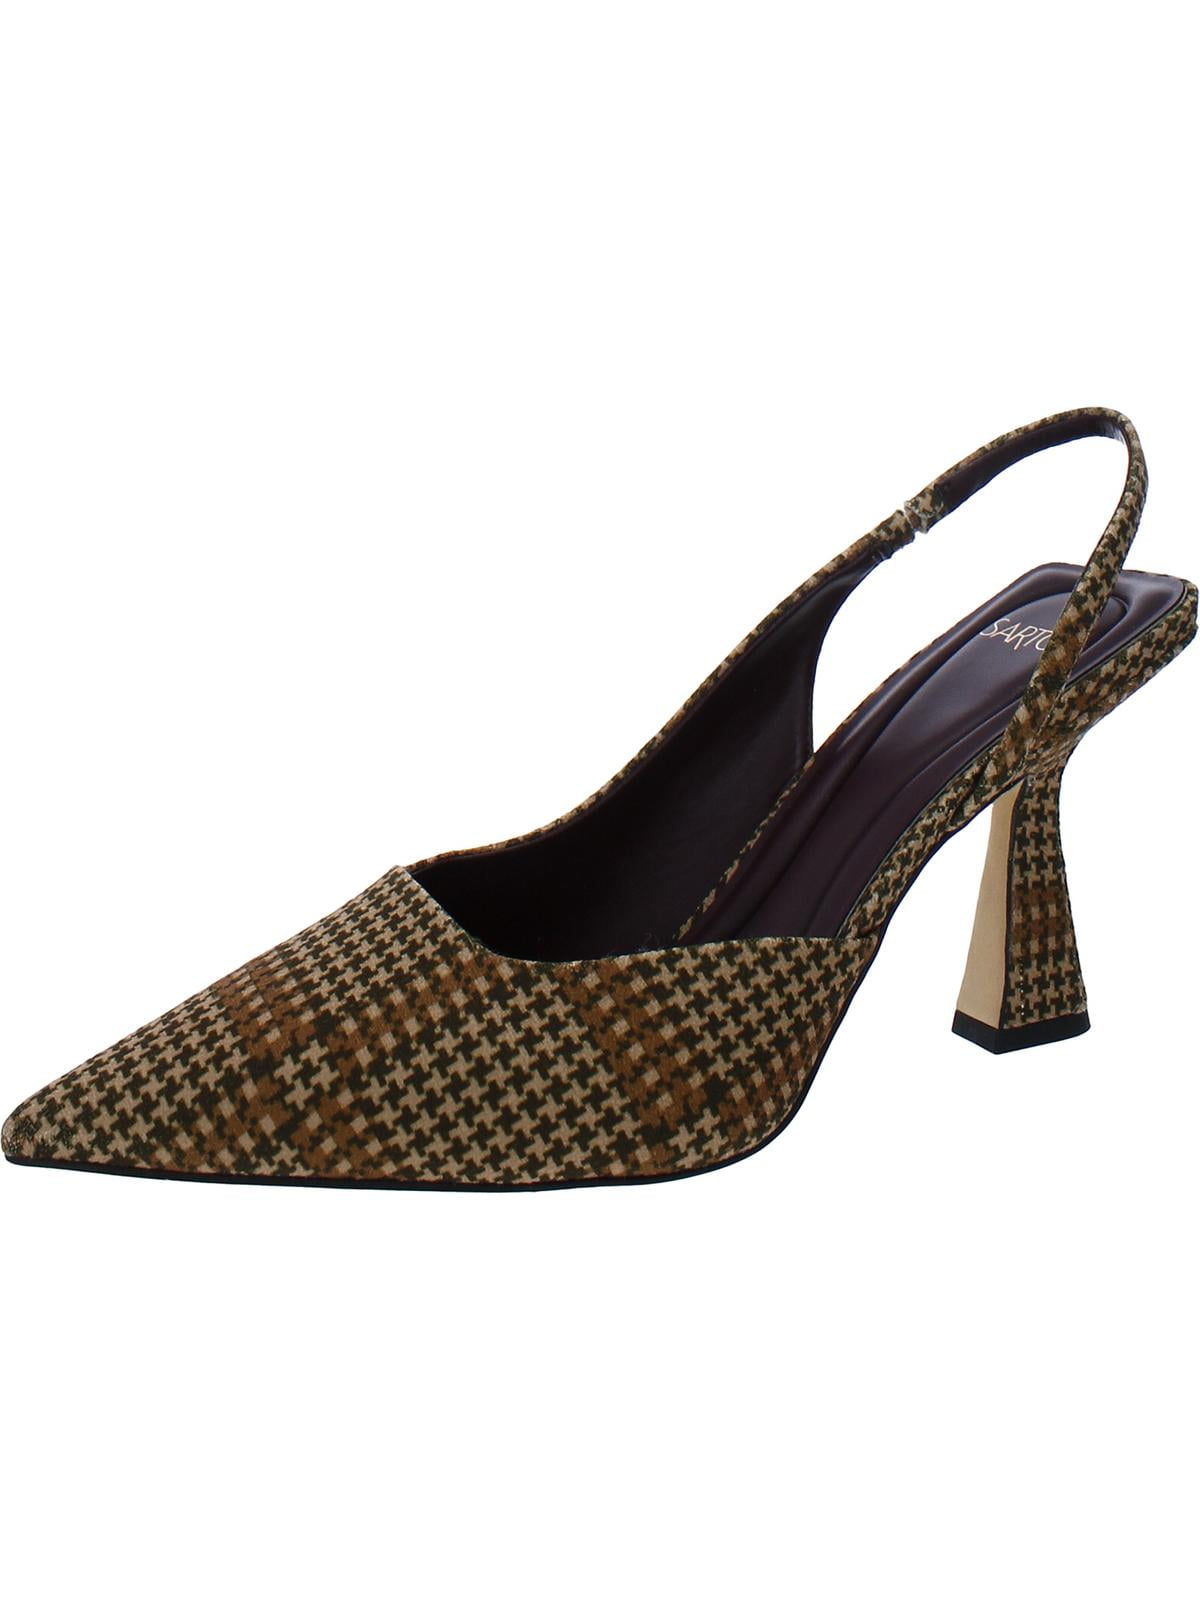 Sarto Franco Sarto Womens Arina Metallic Pointed Toe D'Orsay Heels ...